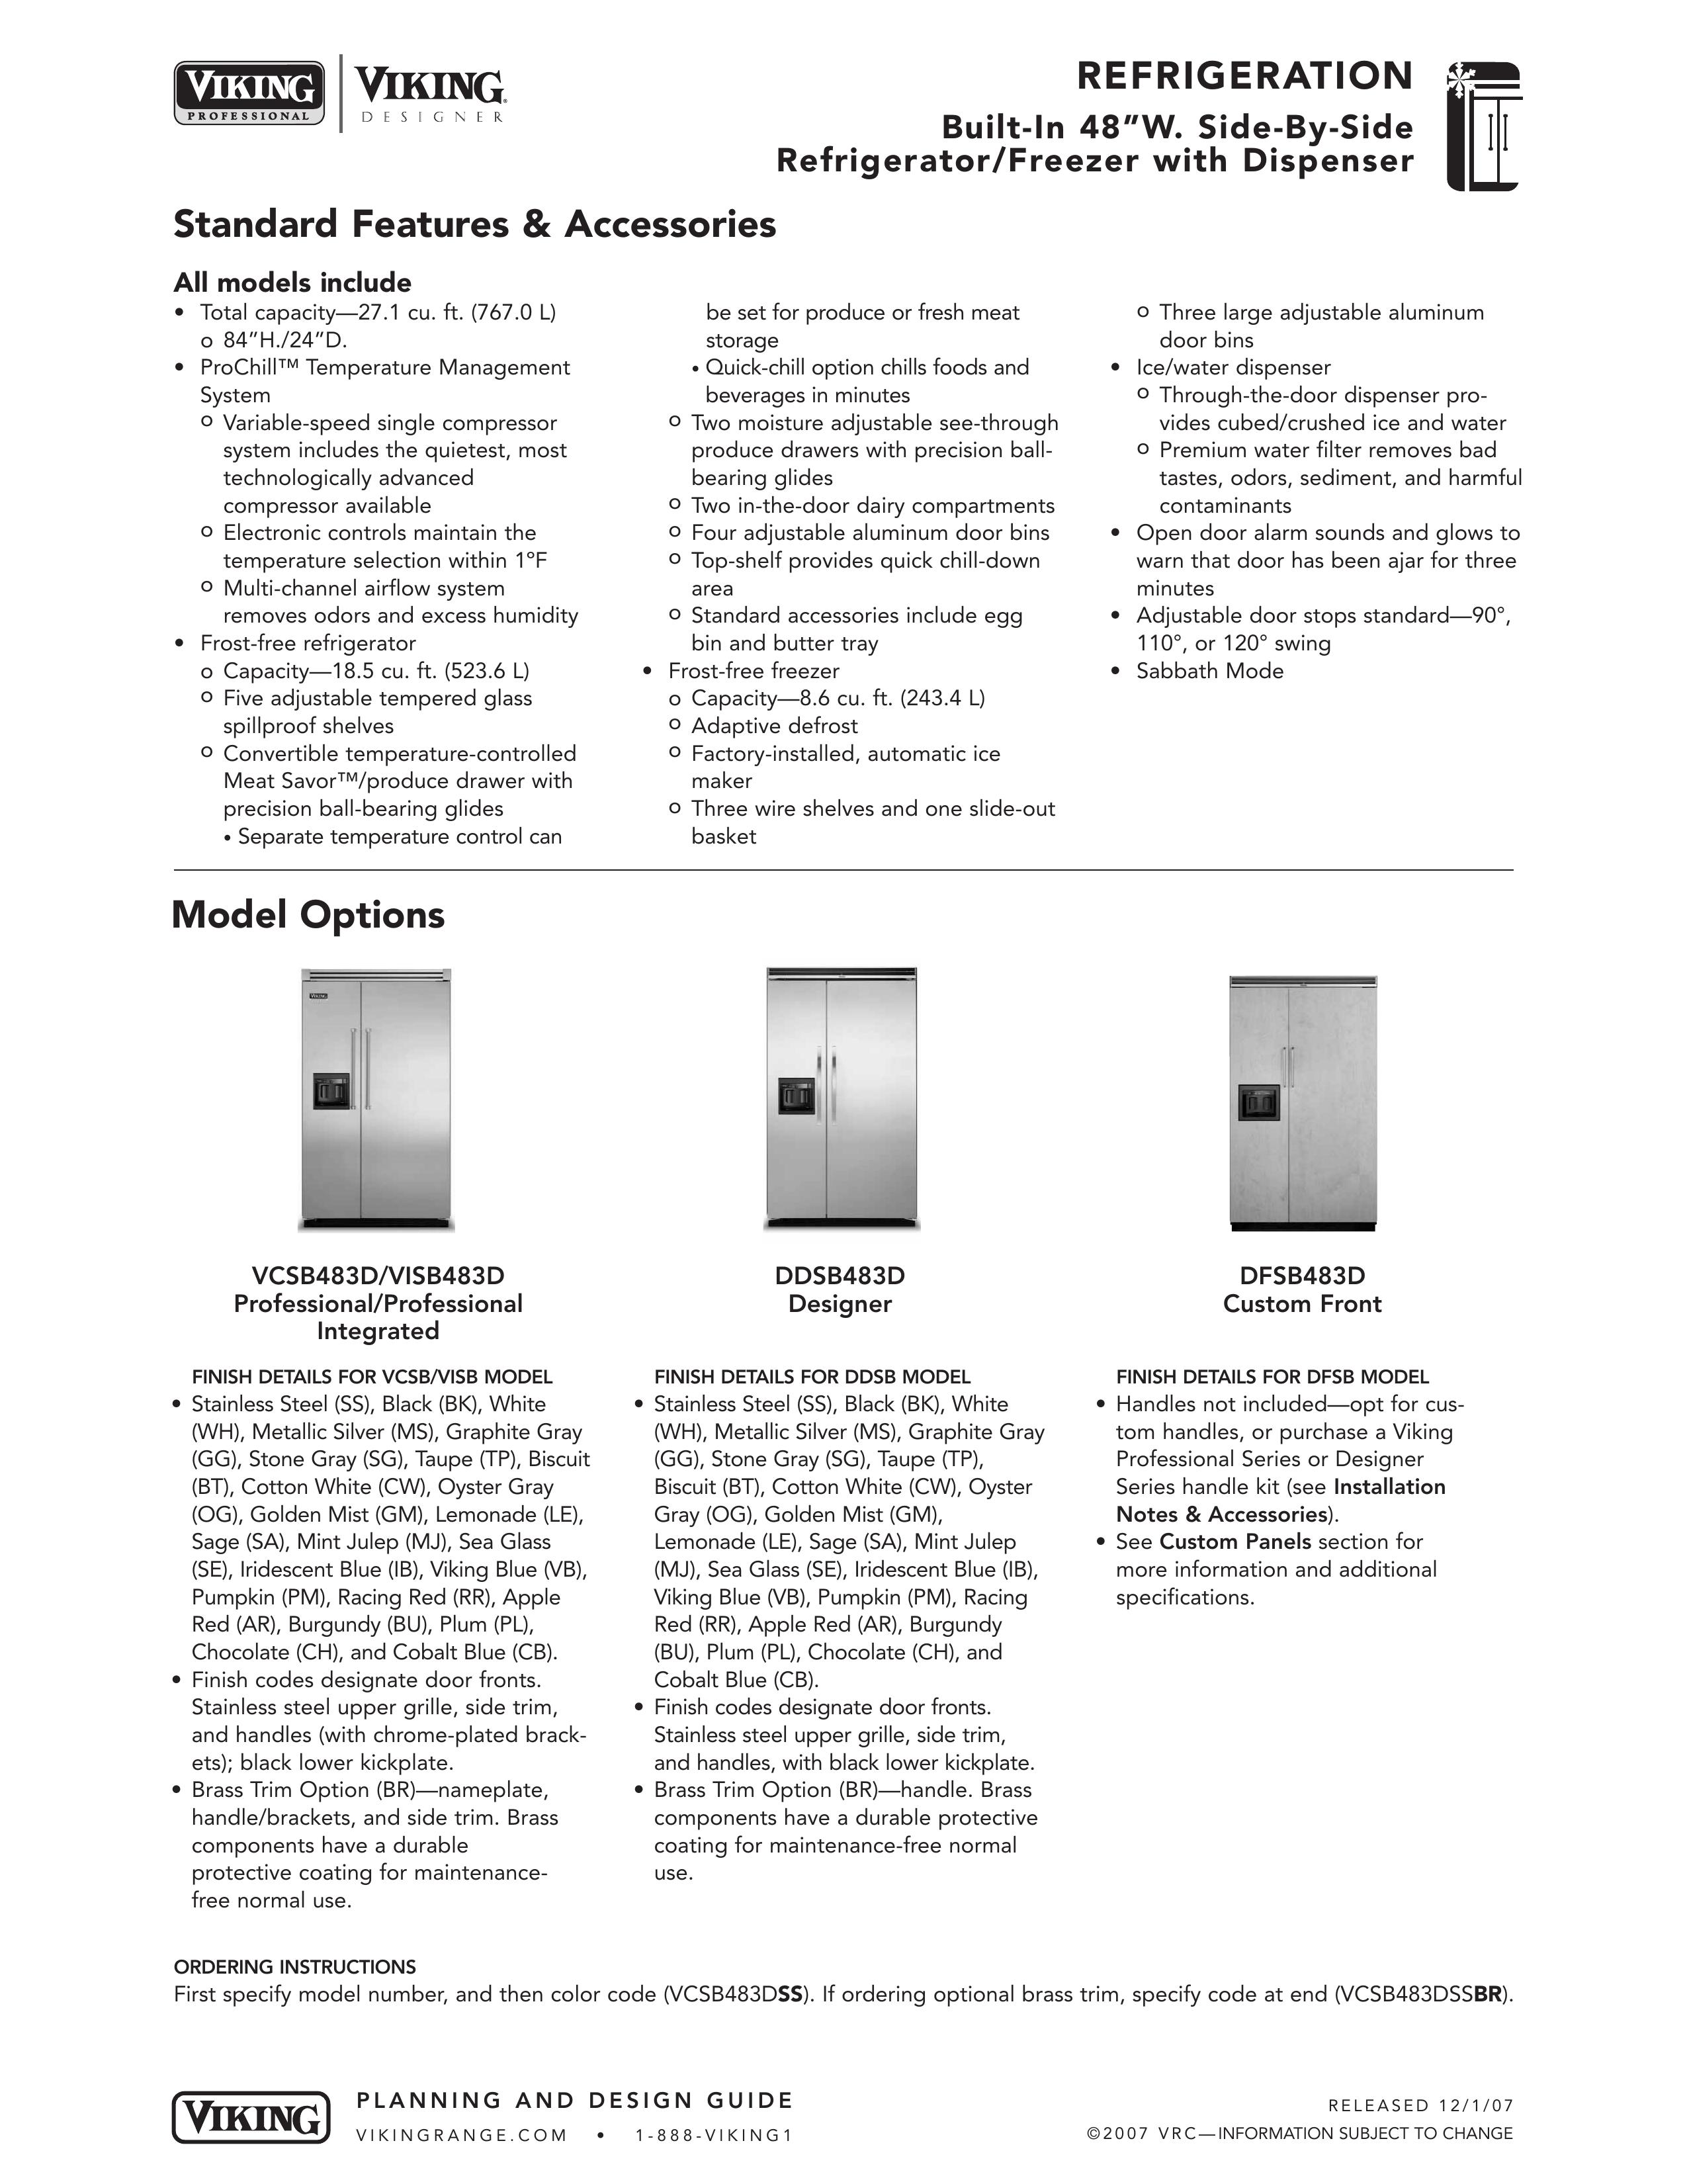 Viking DDSB483D Refrigerator User Manual